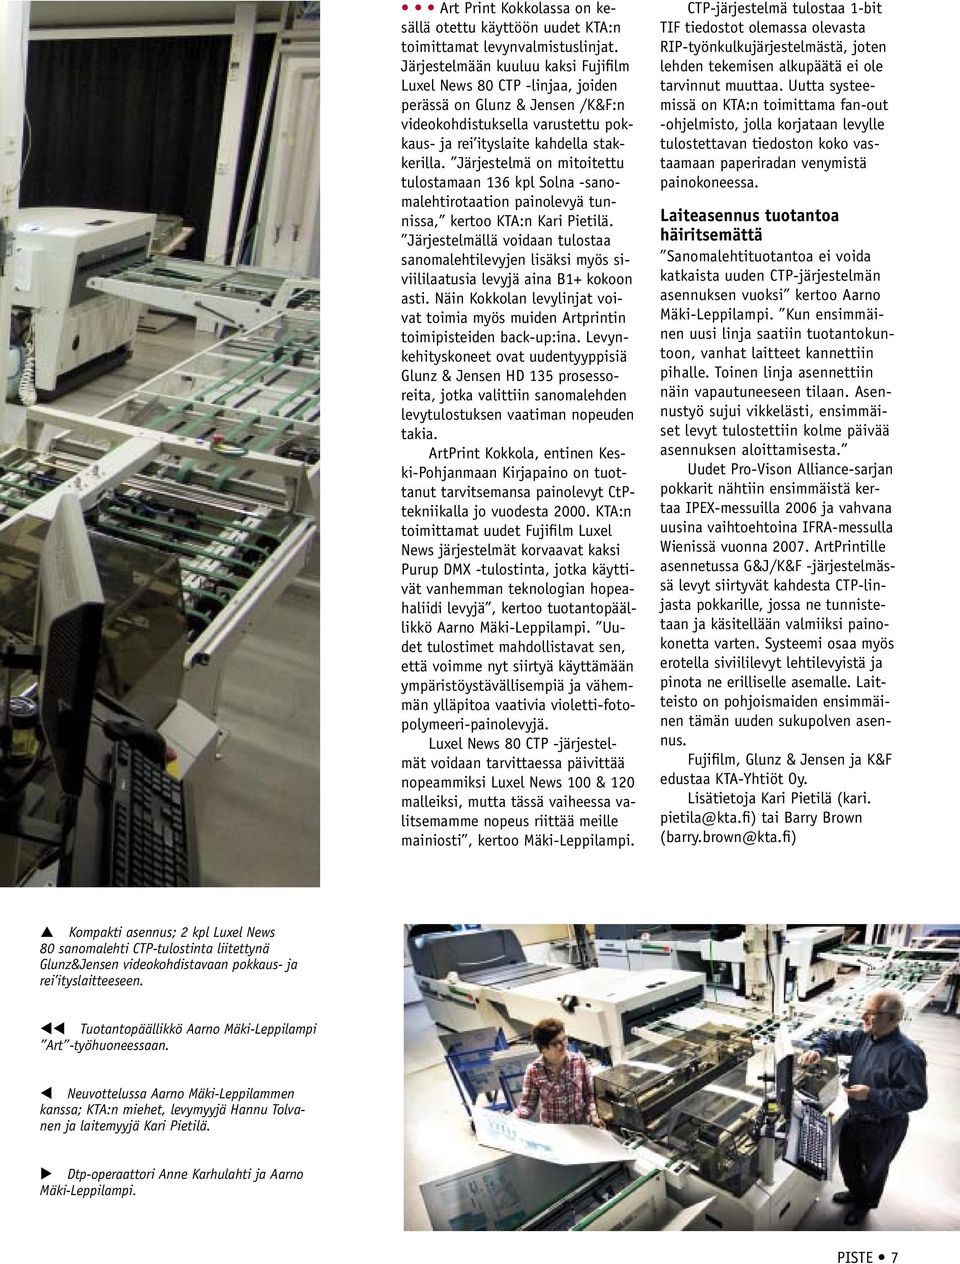 Järjestelmä on mitoitettu tulostamaan 136 kpl Solna -sanomalehtirotaation painolevyä tunnissa, kertoo KTA:n Kari Pietilä.